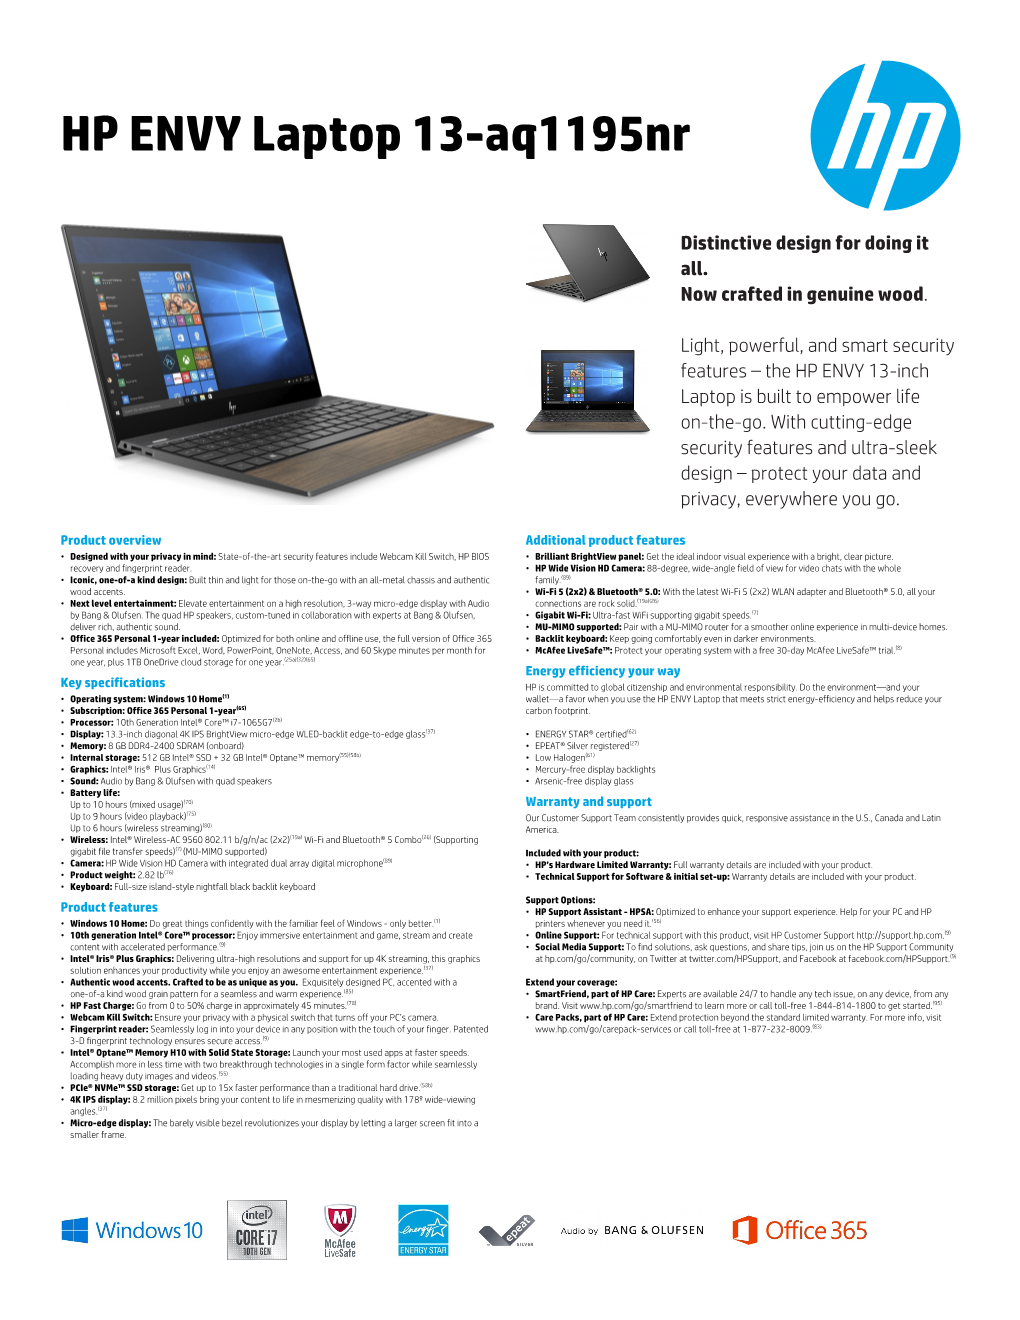 HP ENVY Laptop 13-Aq1195nr